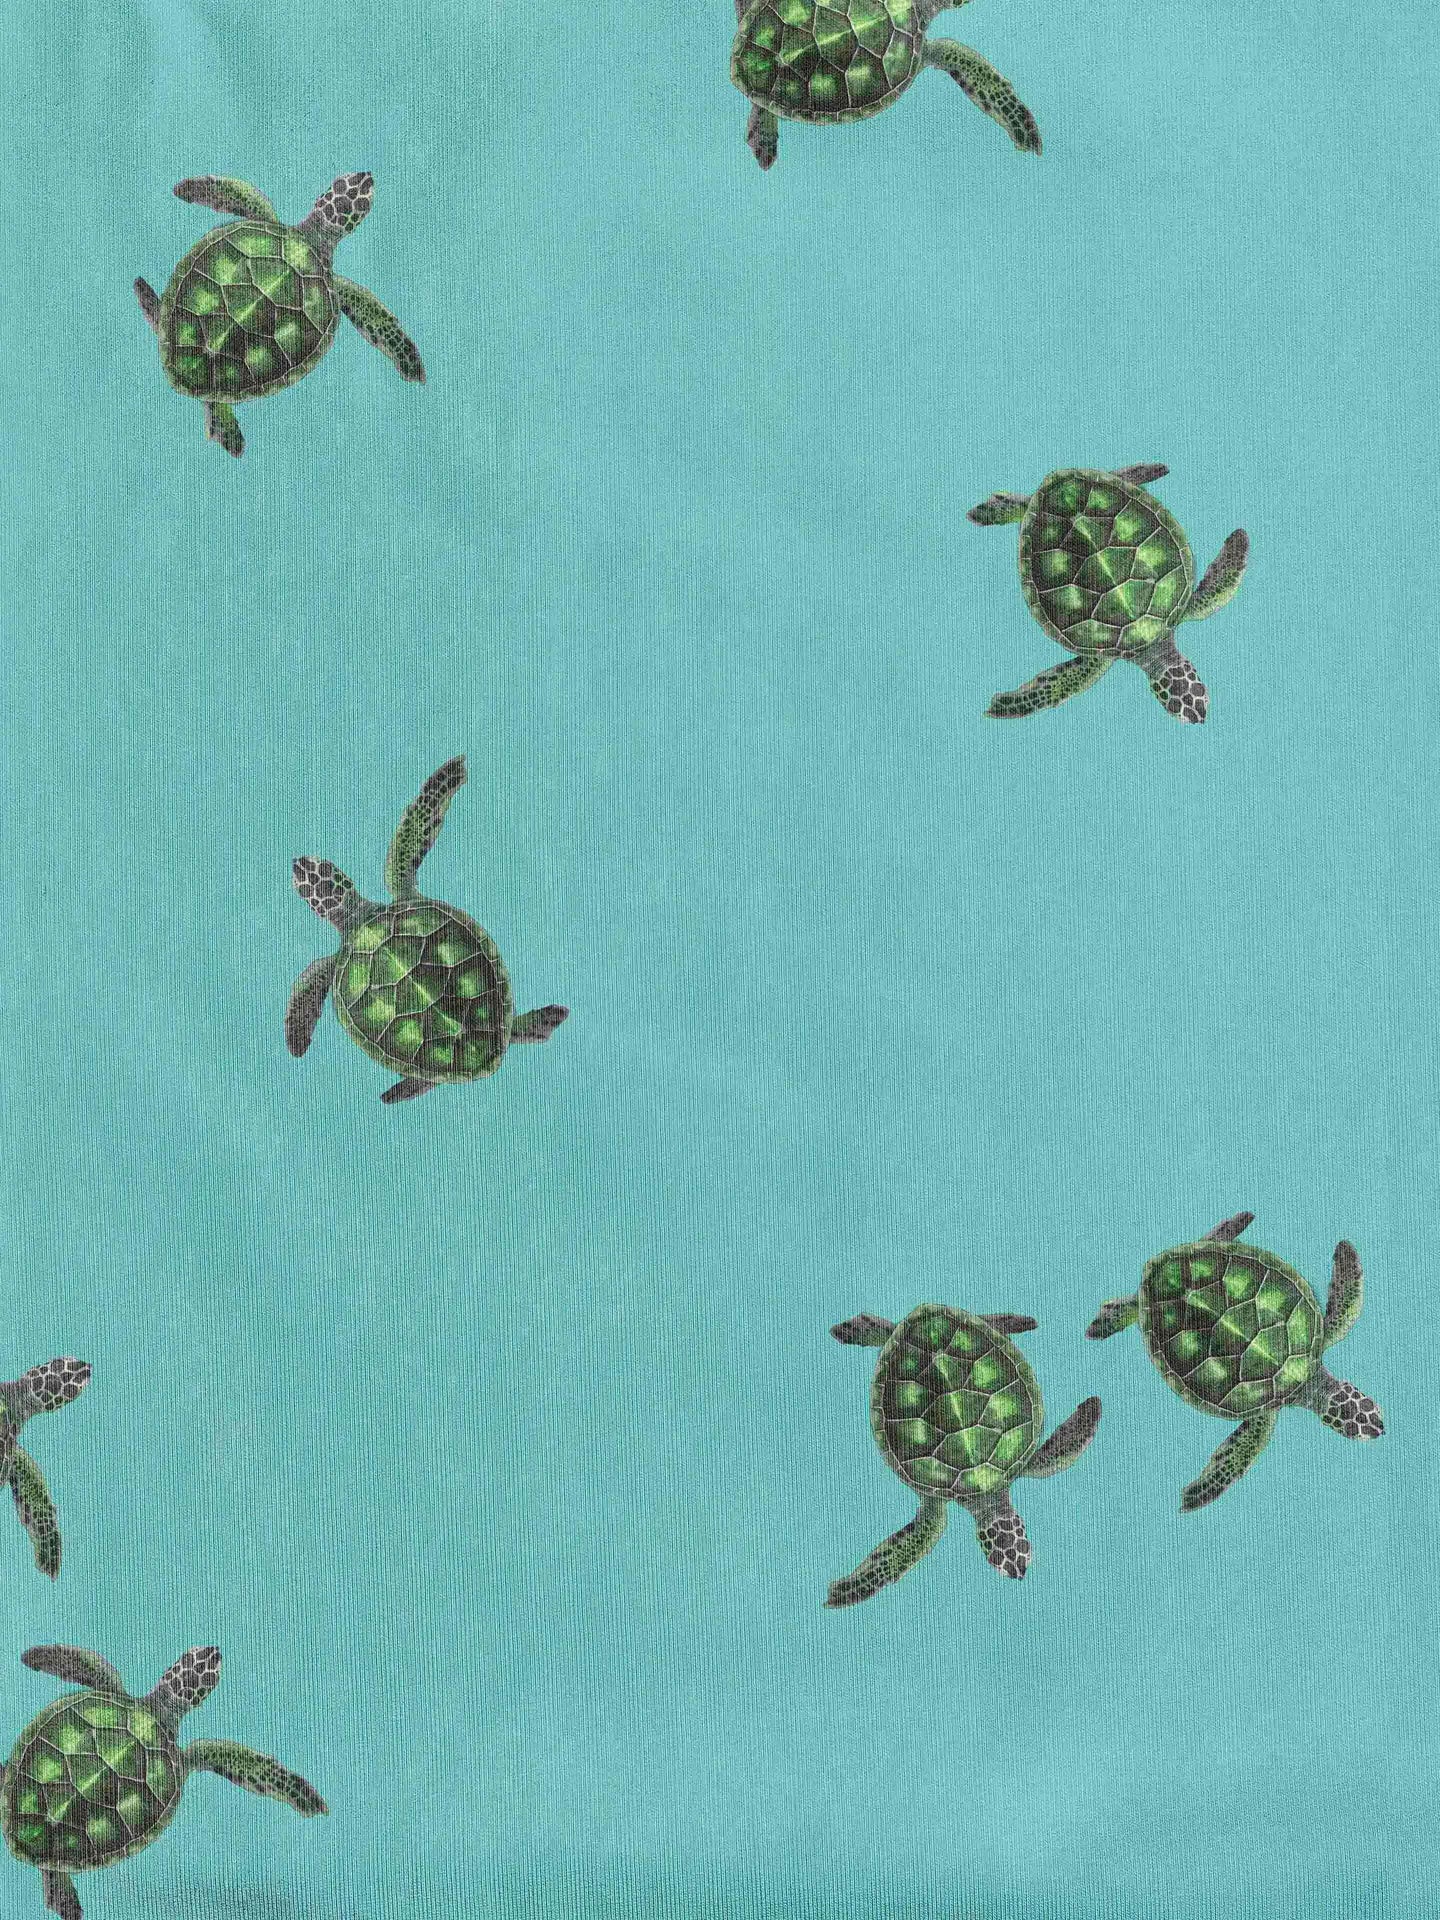 Sea Turtles V-neck T-shirt en Korte Broek set Dames - SNURK